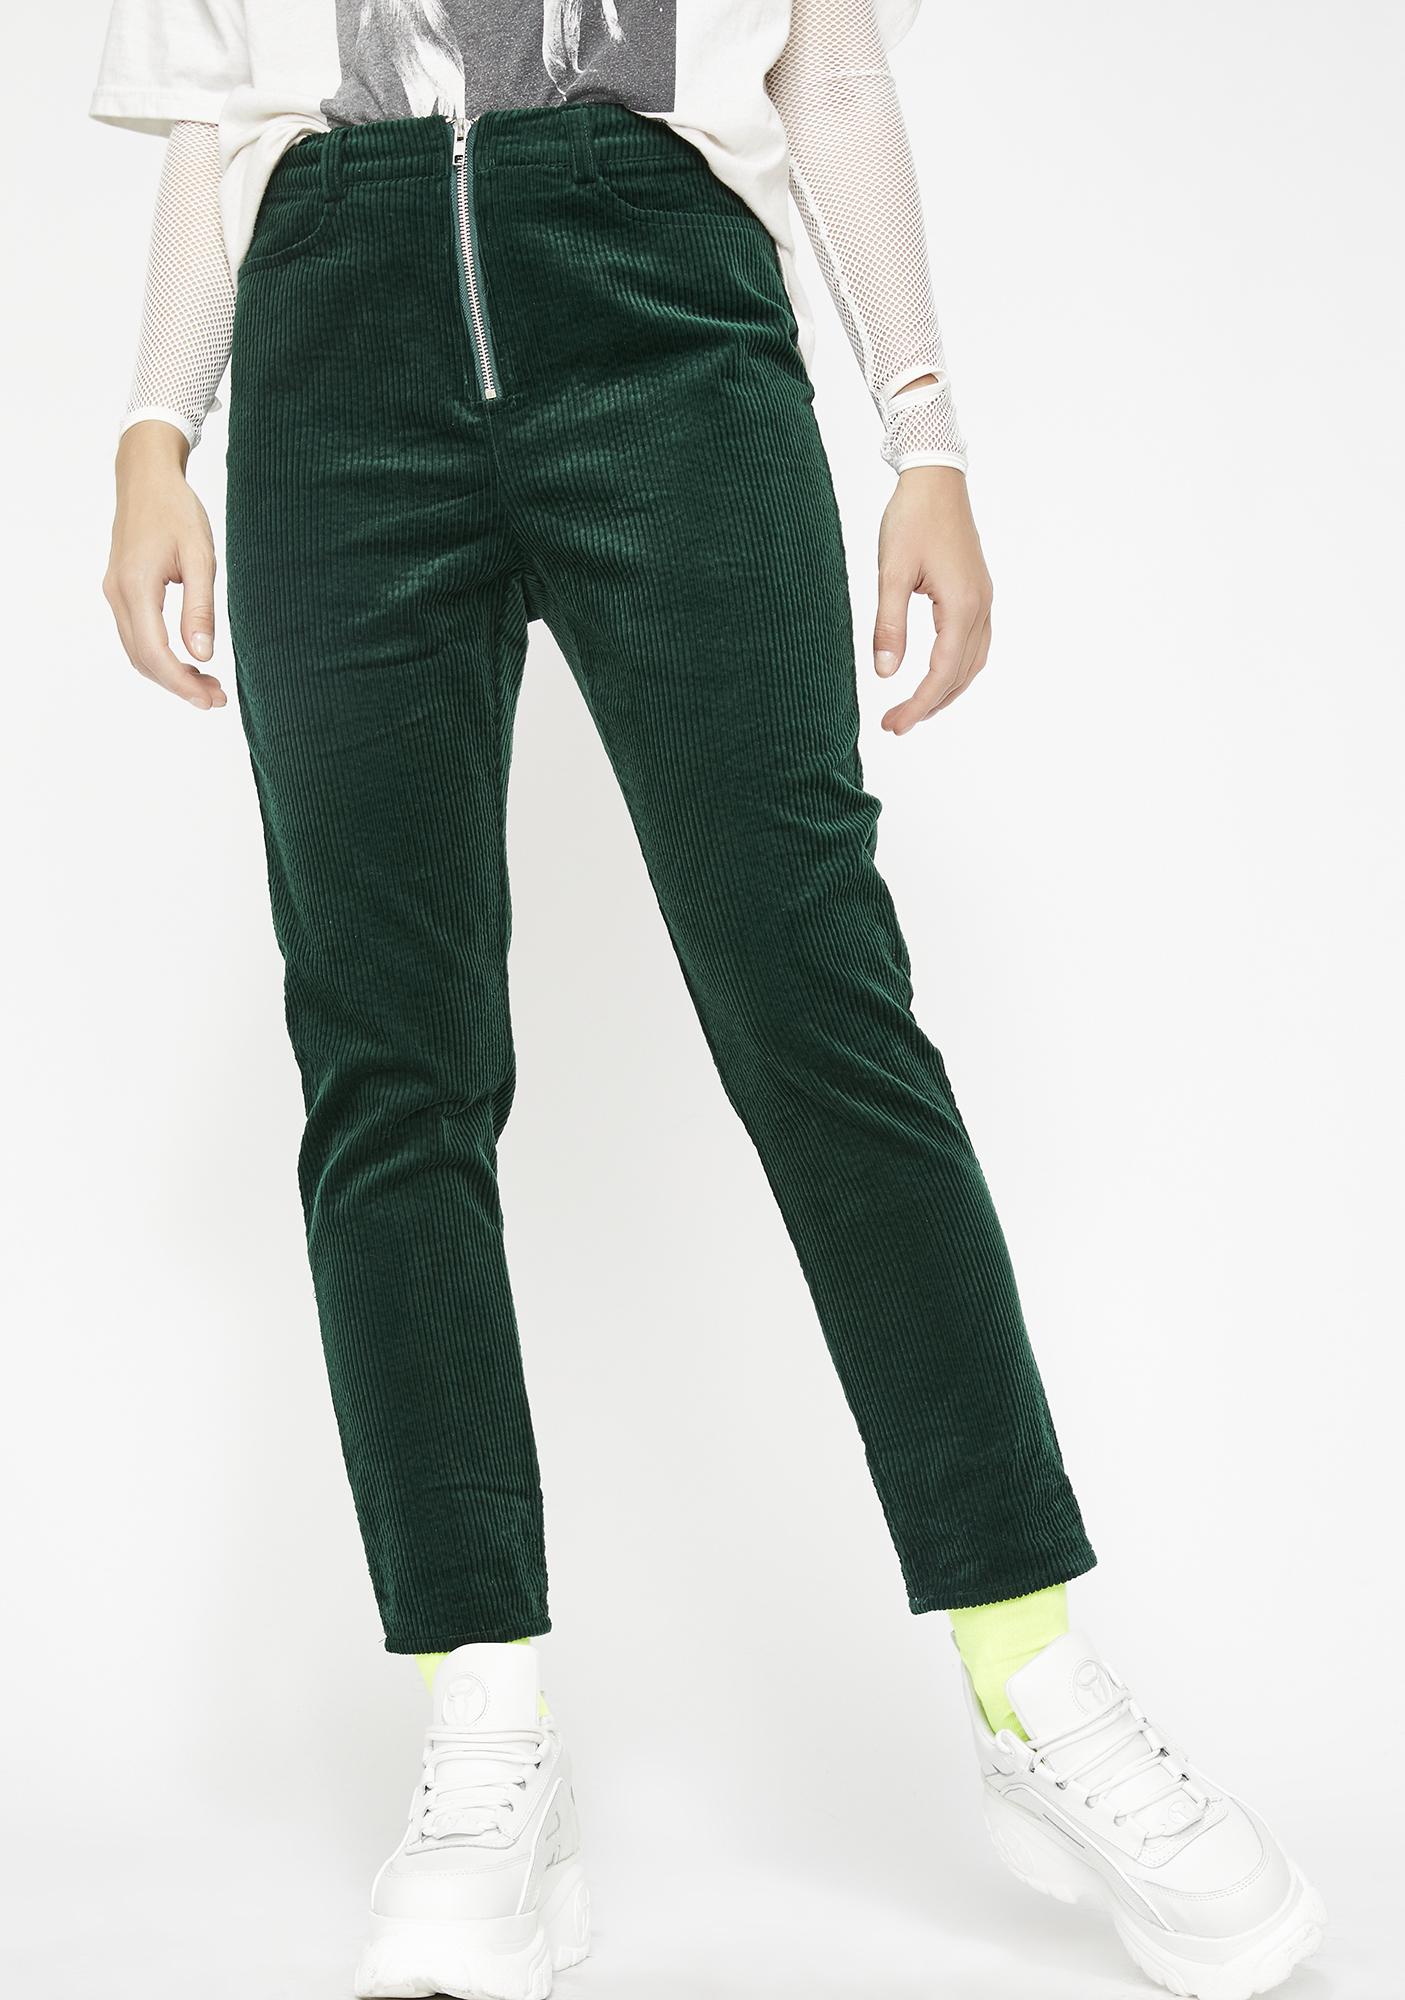 emerald green corduroy pants